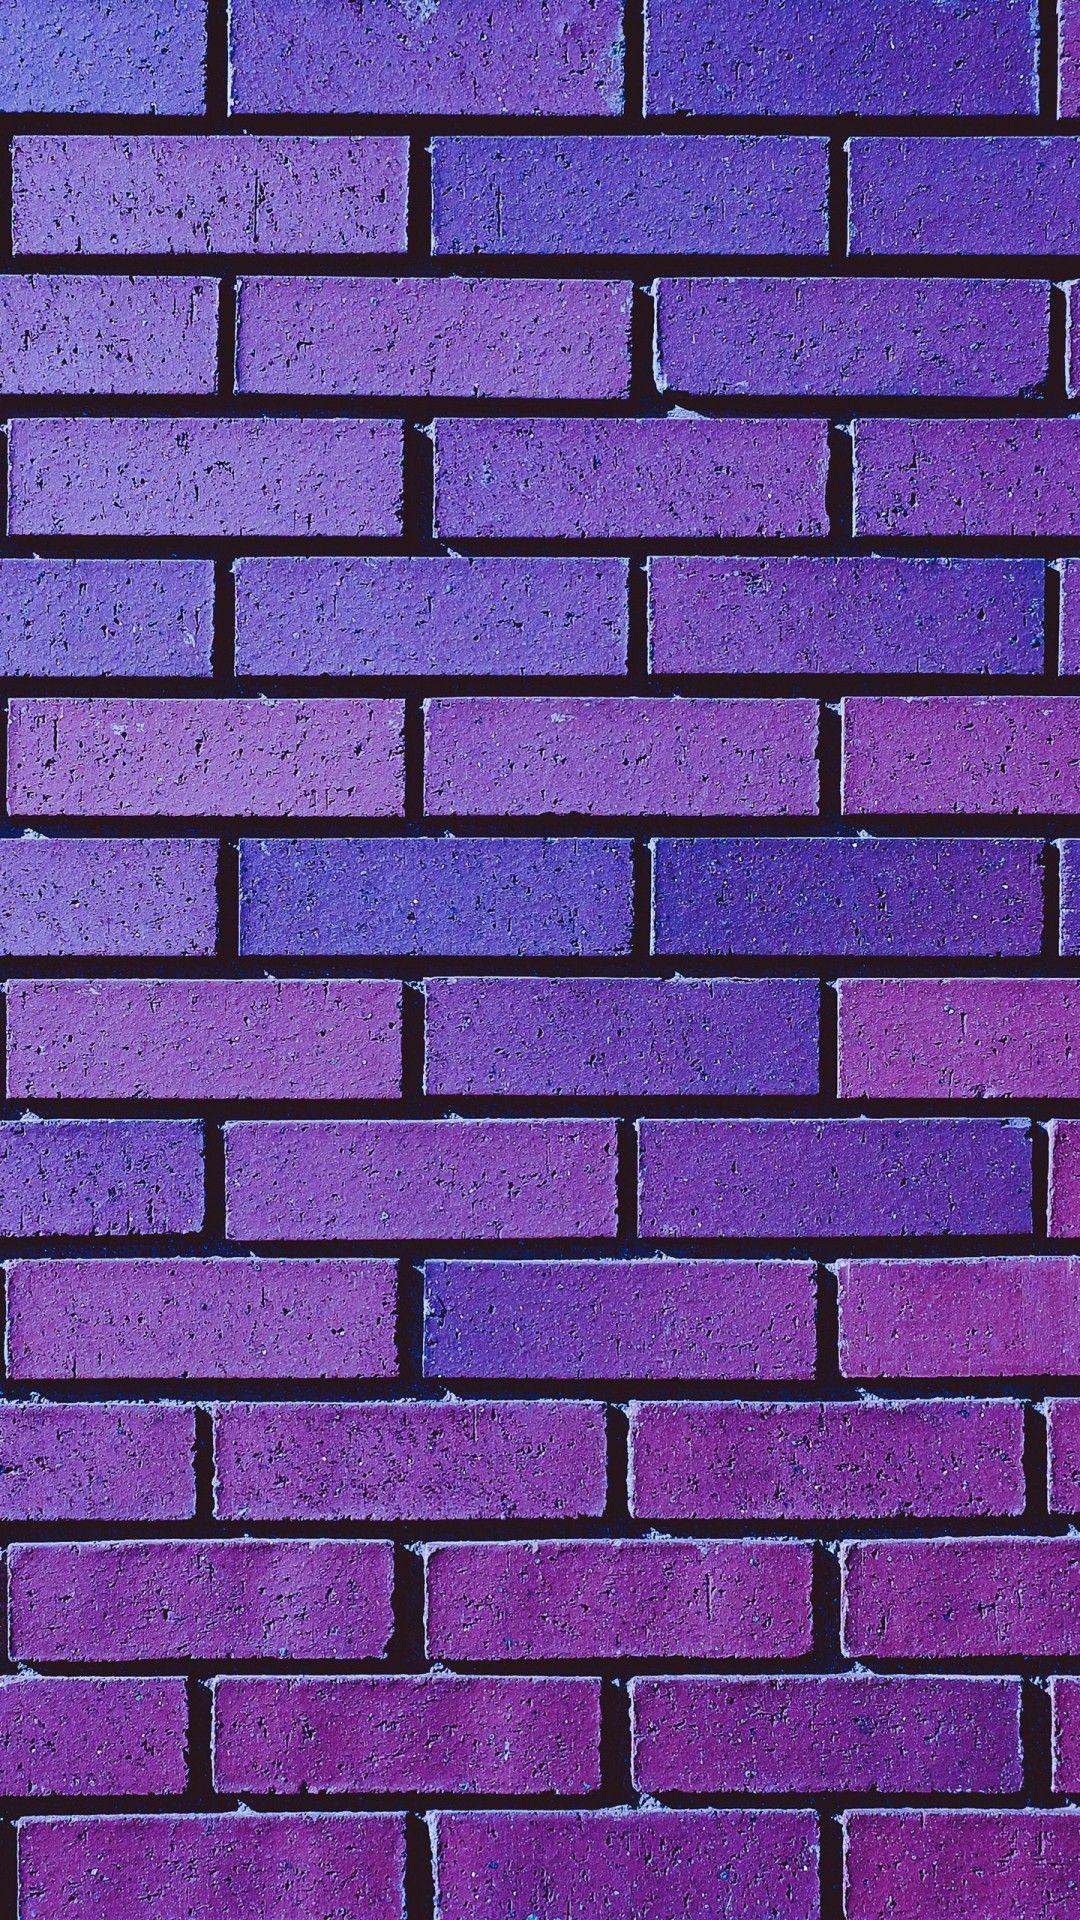 Faux Brick Wallpaper Dining Room Inspirations Andersen Brick